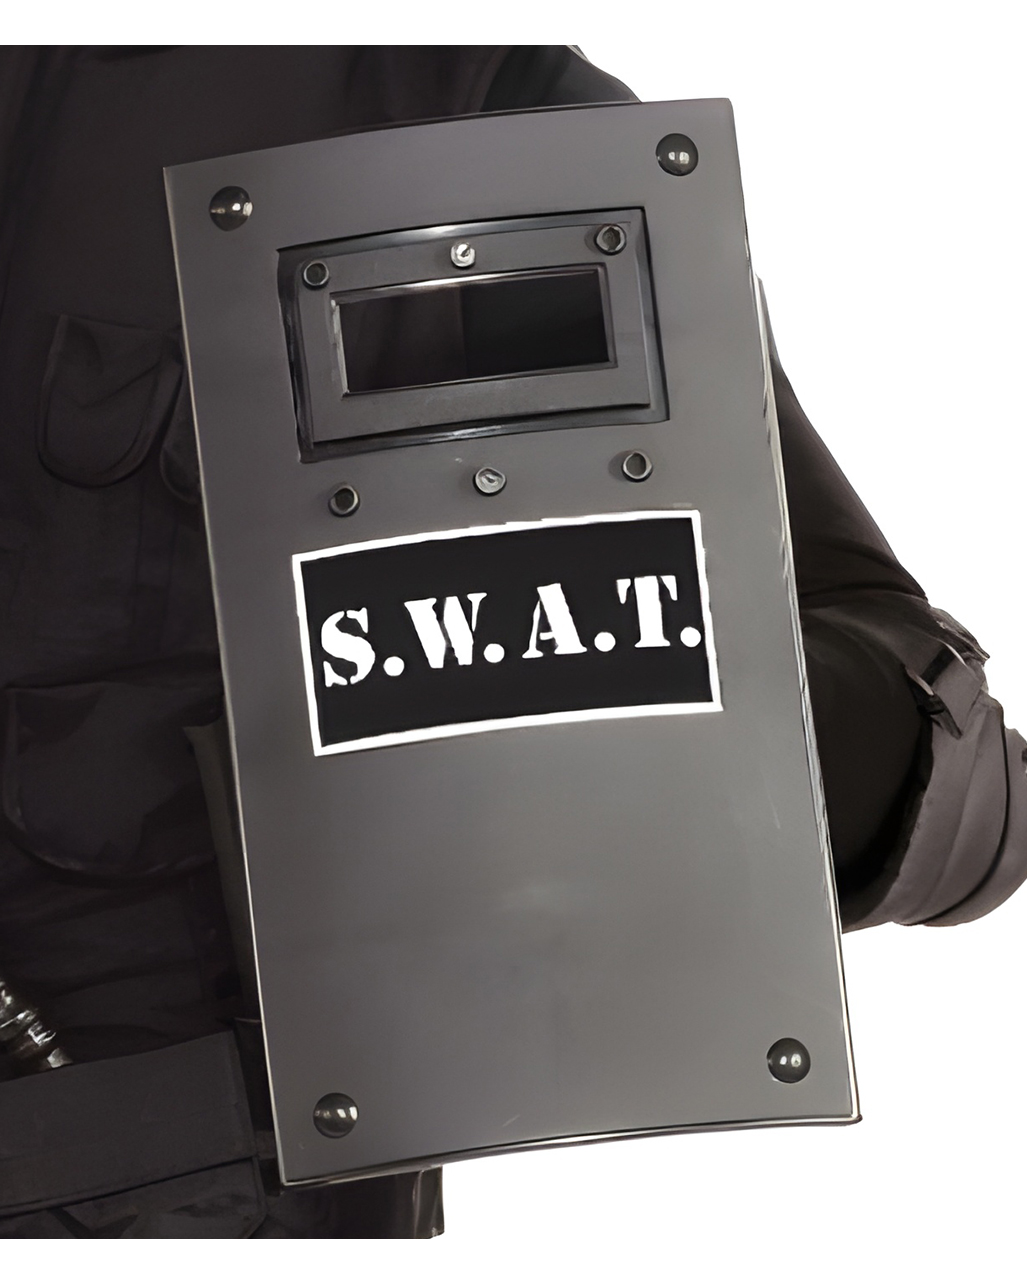 swat schild kostuemzubehoer swat shield costume accessories special weapons and tactics spezialeinheit schild 56118 1